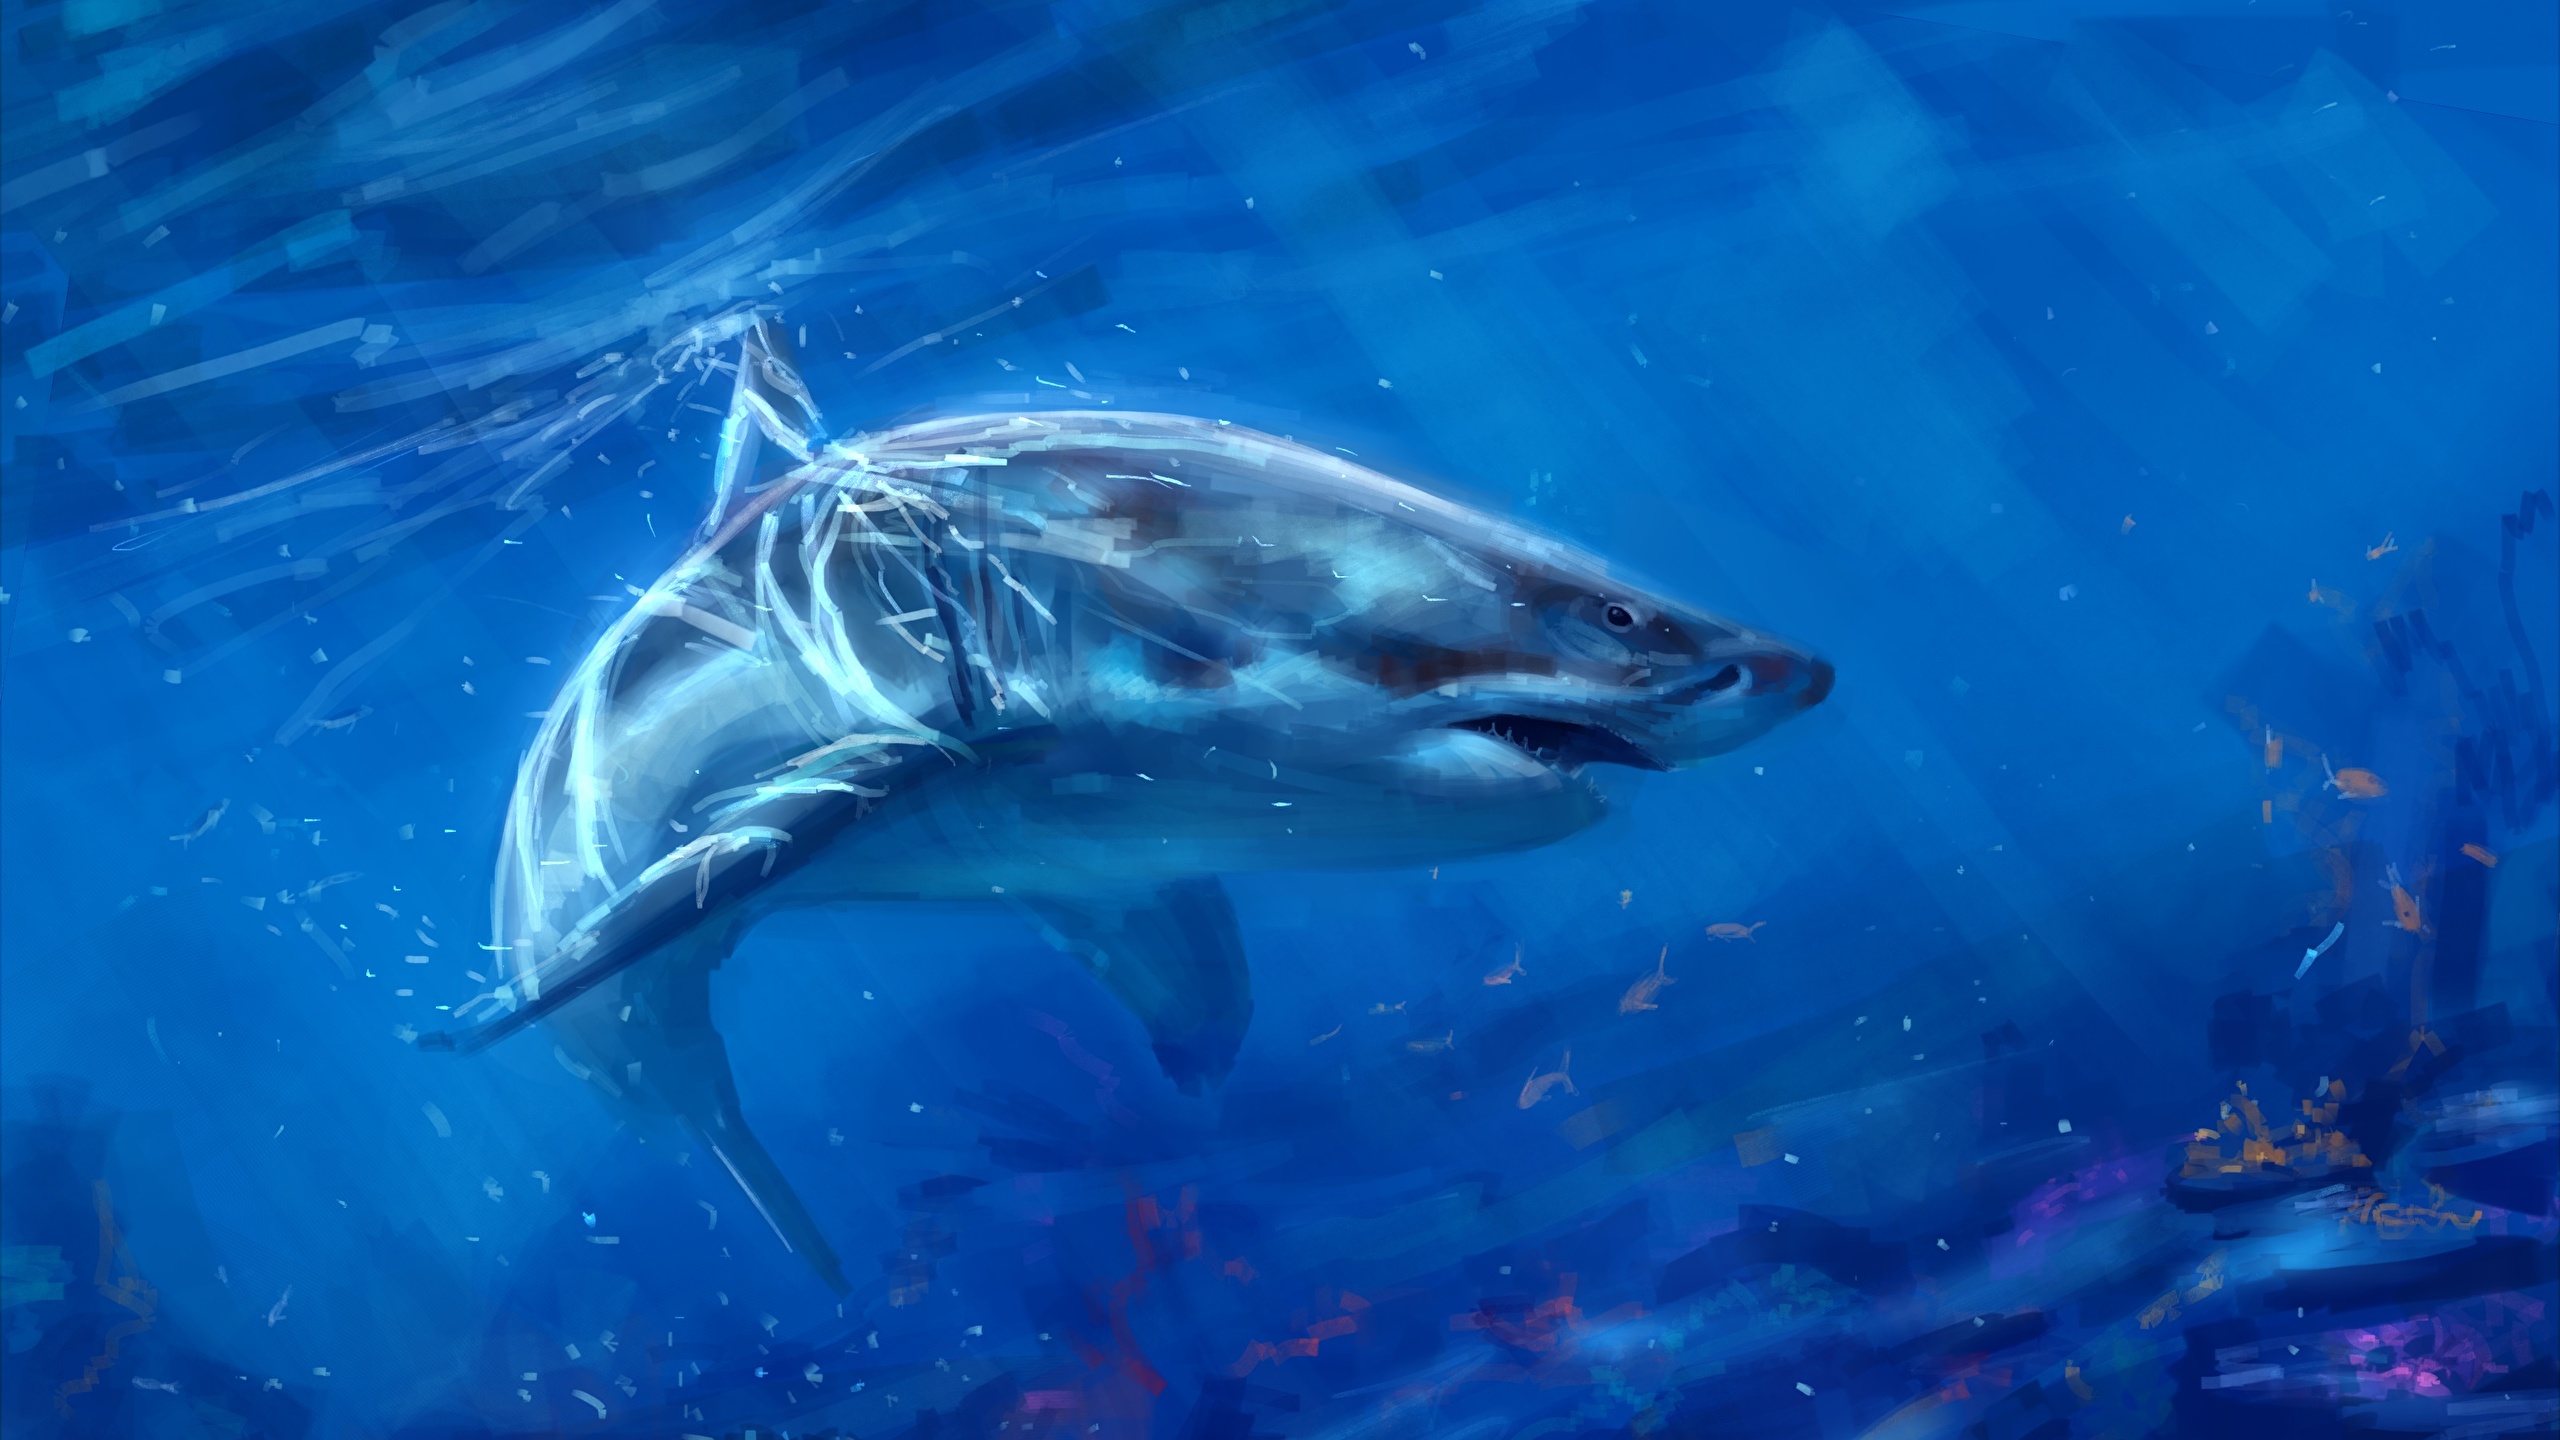 壁紙 2560x1440 アンダーウォーターワールド 描かれた壁紙 サメ 動物 ダウンロード 写真